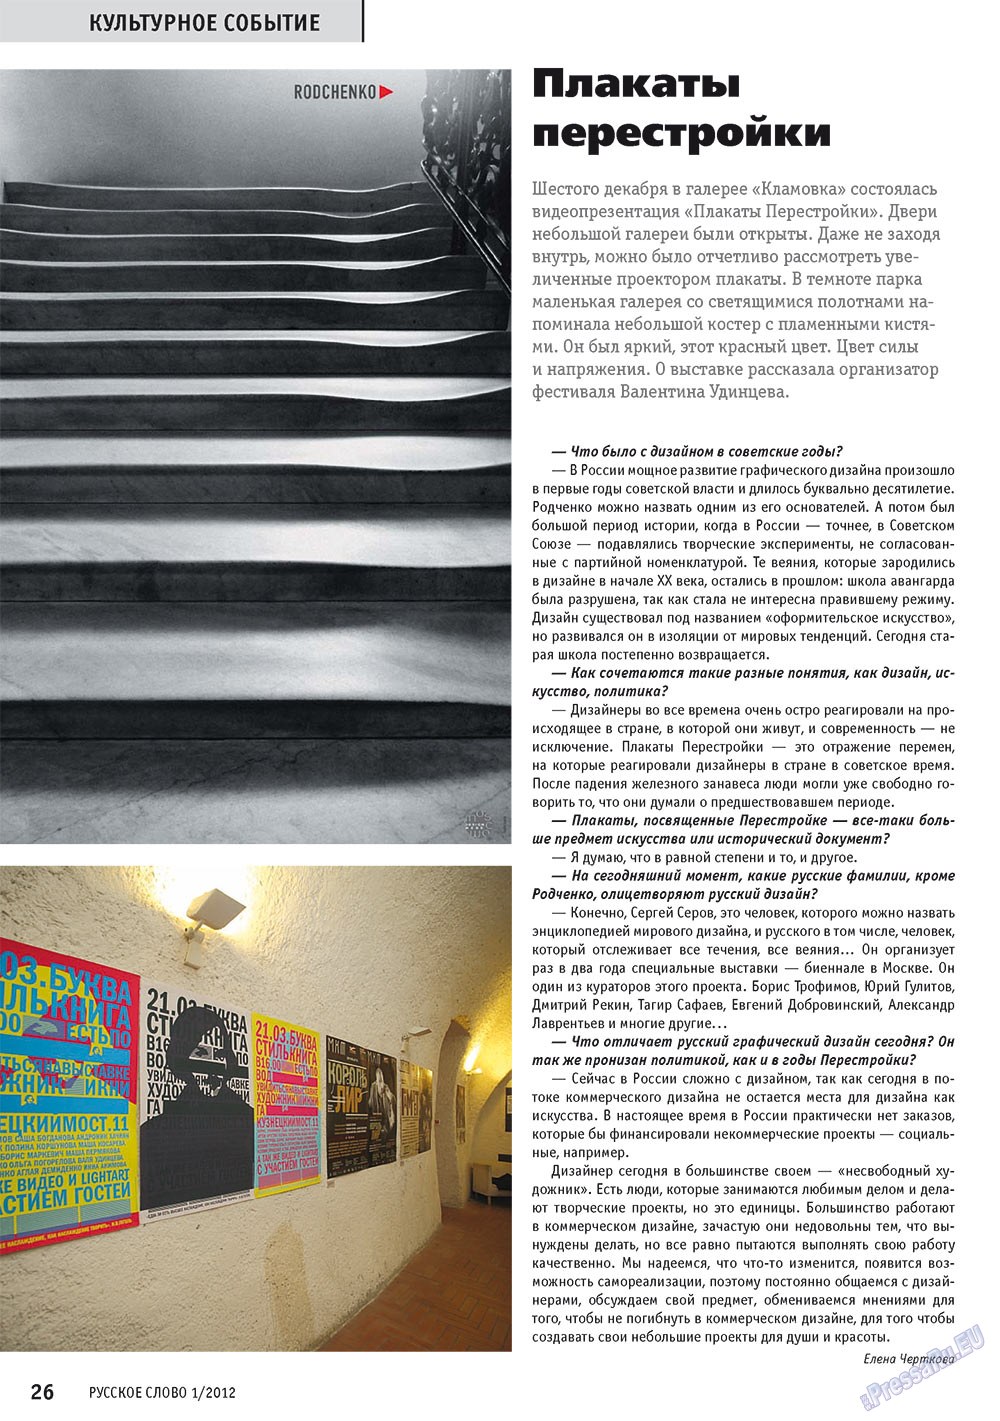 Русское слово, журнал. 2012 №1 стр.28